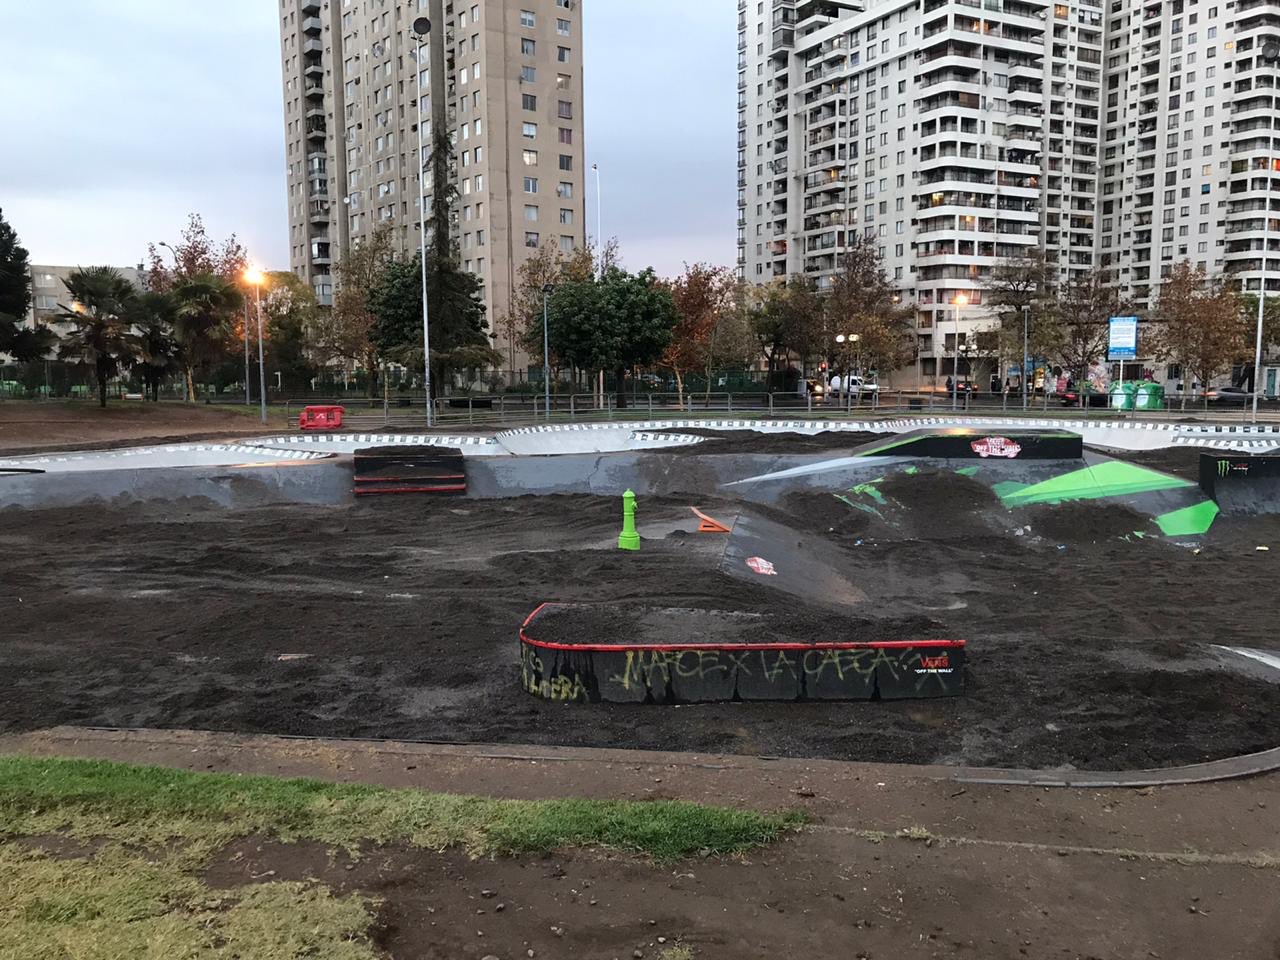 Absurdo: Municipio de Santiago llena con 5 toneladas de tierra skate park de Parque de Los Reyes para inhabilitarlo